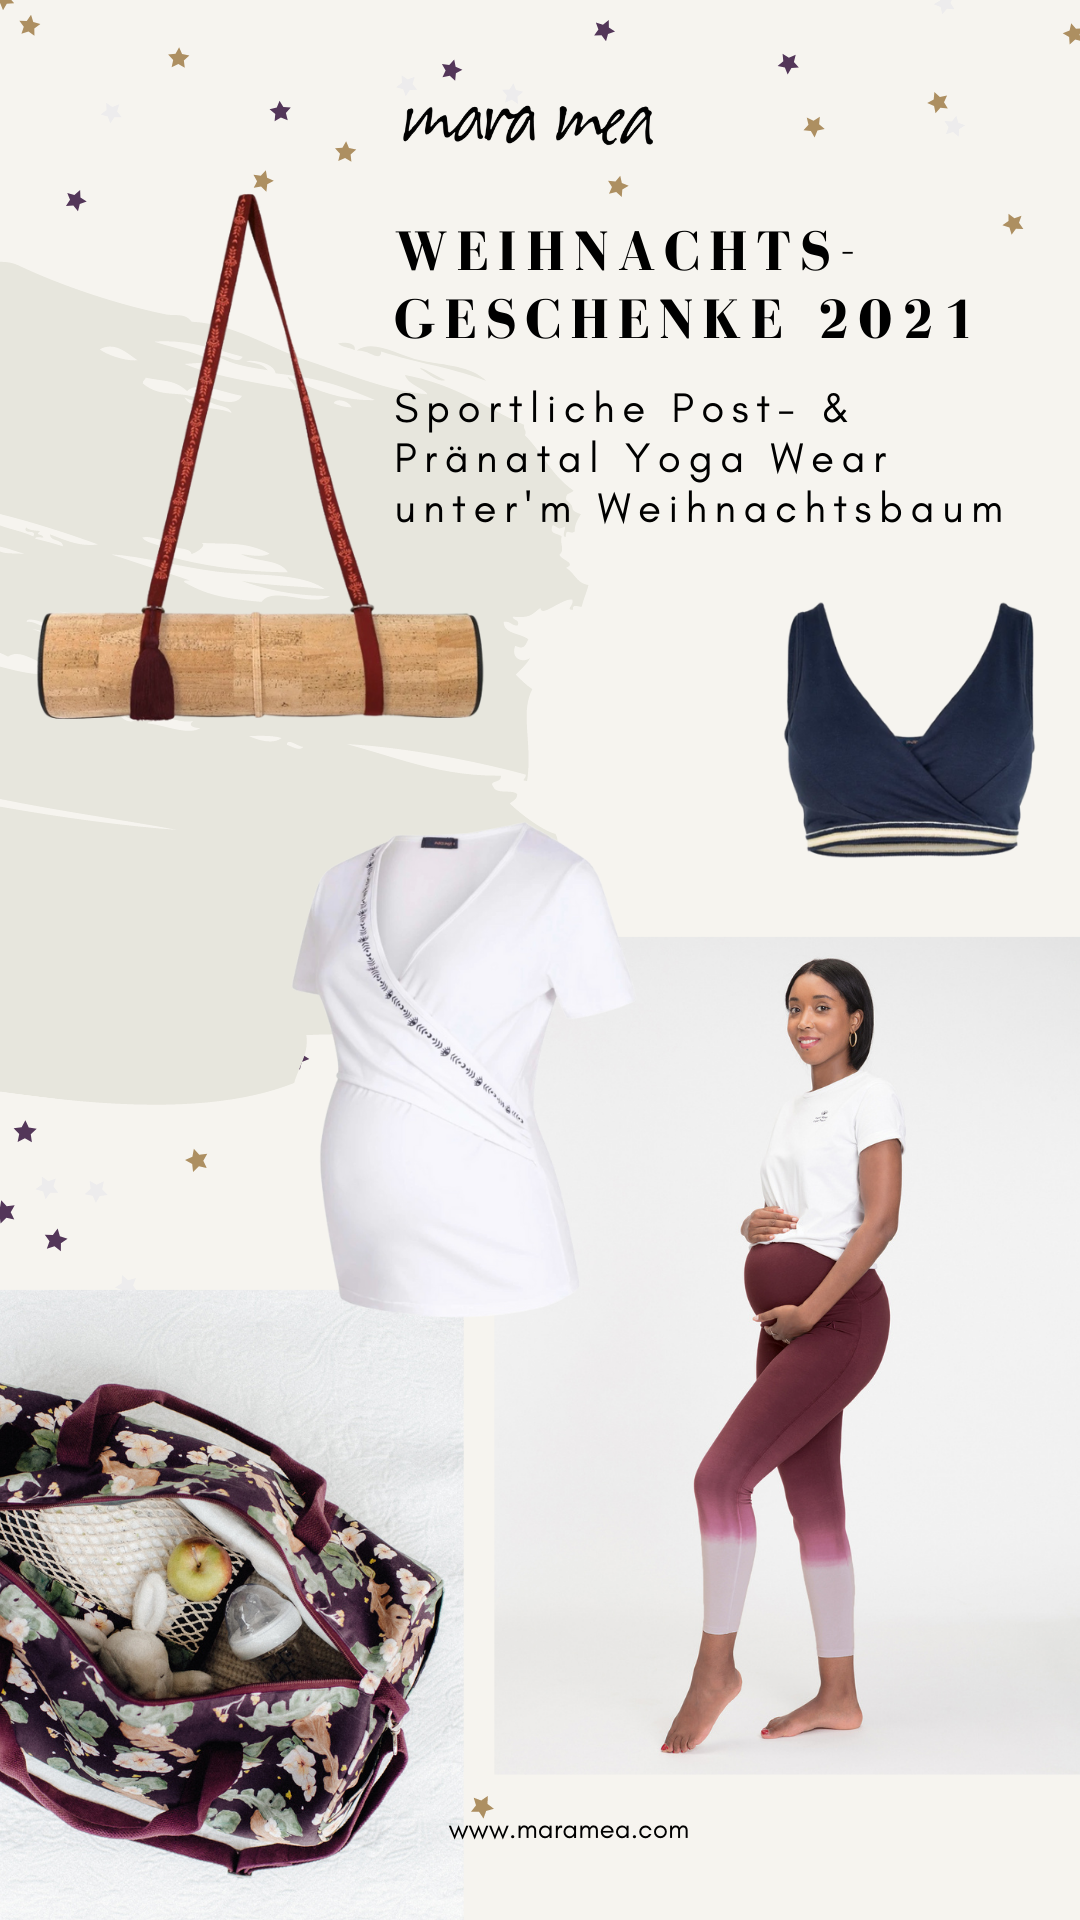 Postnatale und Pränatale Yoga-Outfits als Weihnachtsgeschenke